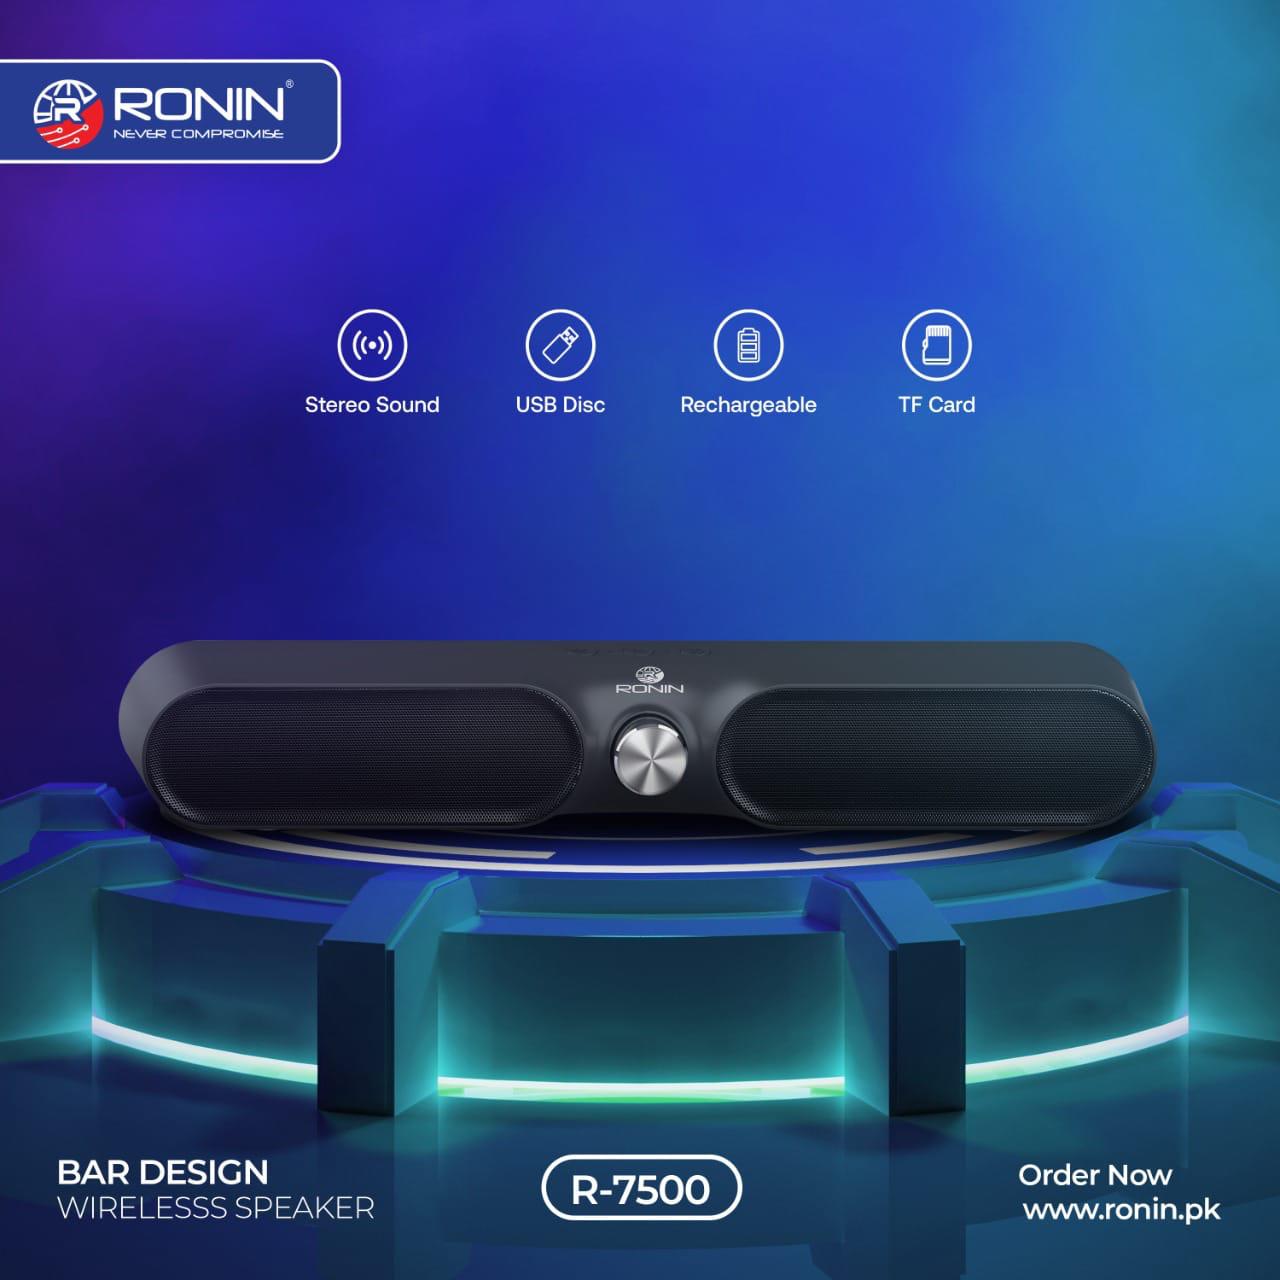 RONIN R-7500 Wireless Sound Bar